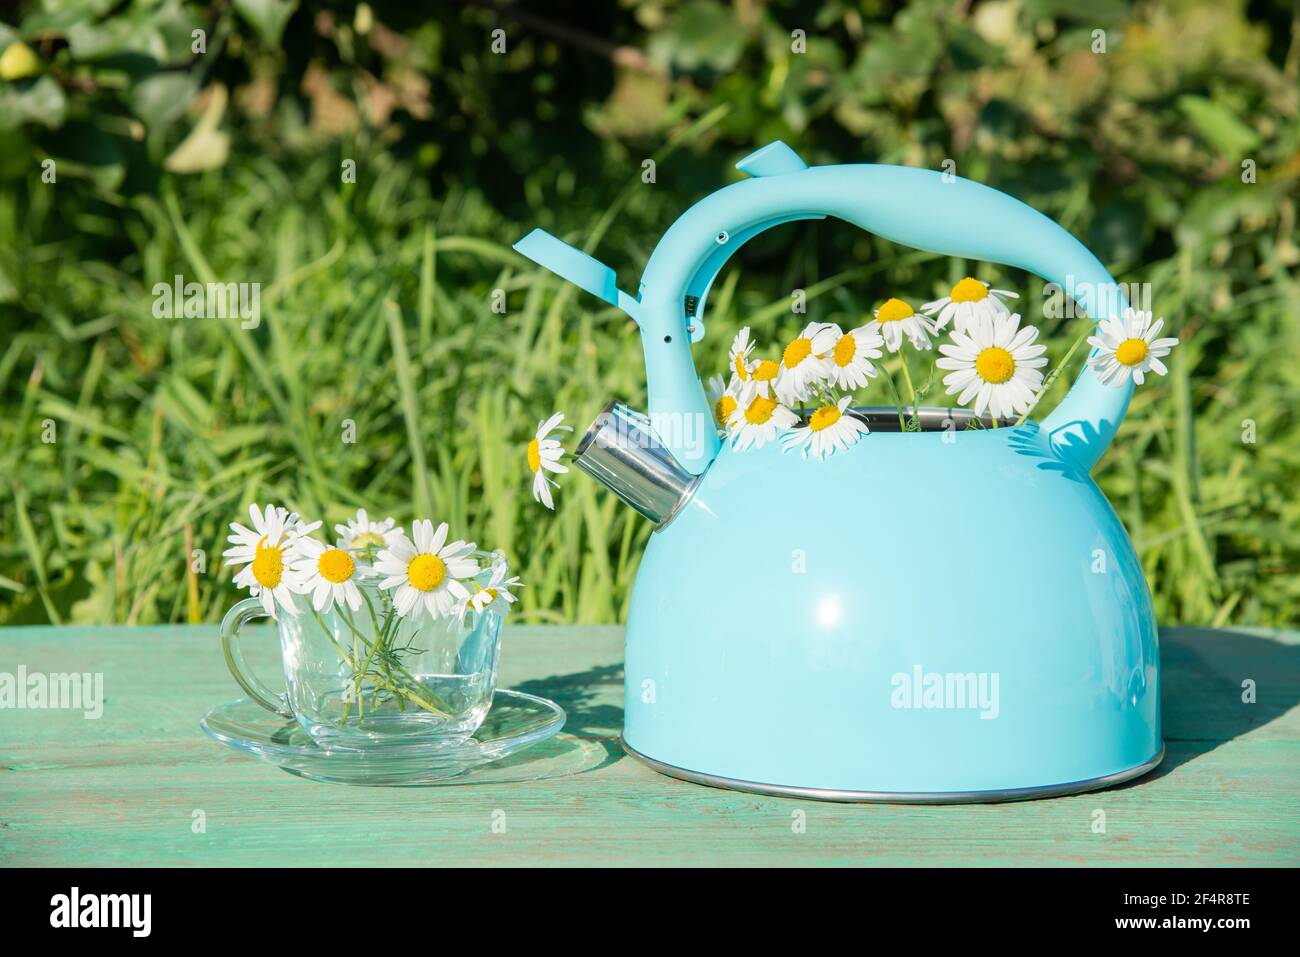 Belle vie d'été encore. Théière bleue avec un bouquet de pâquerettes blanches fraîches et une tasse en verre sur la table dans l'herbe verte Banque D'Images